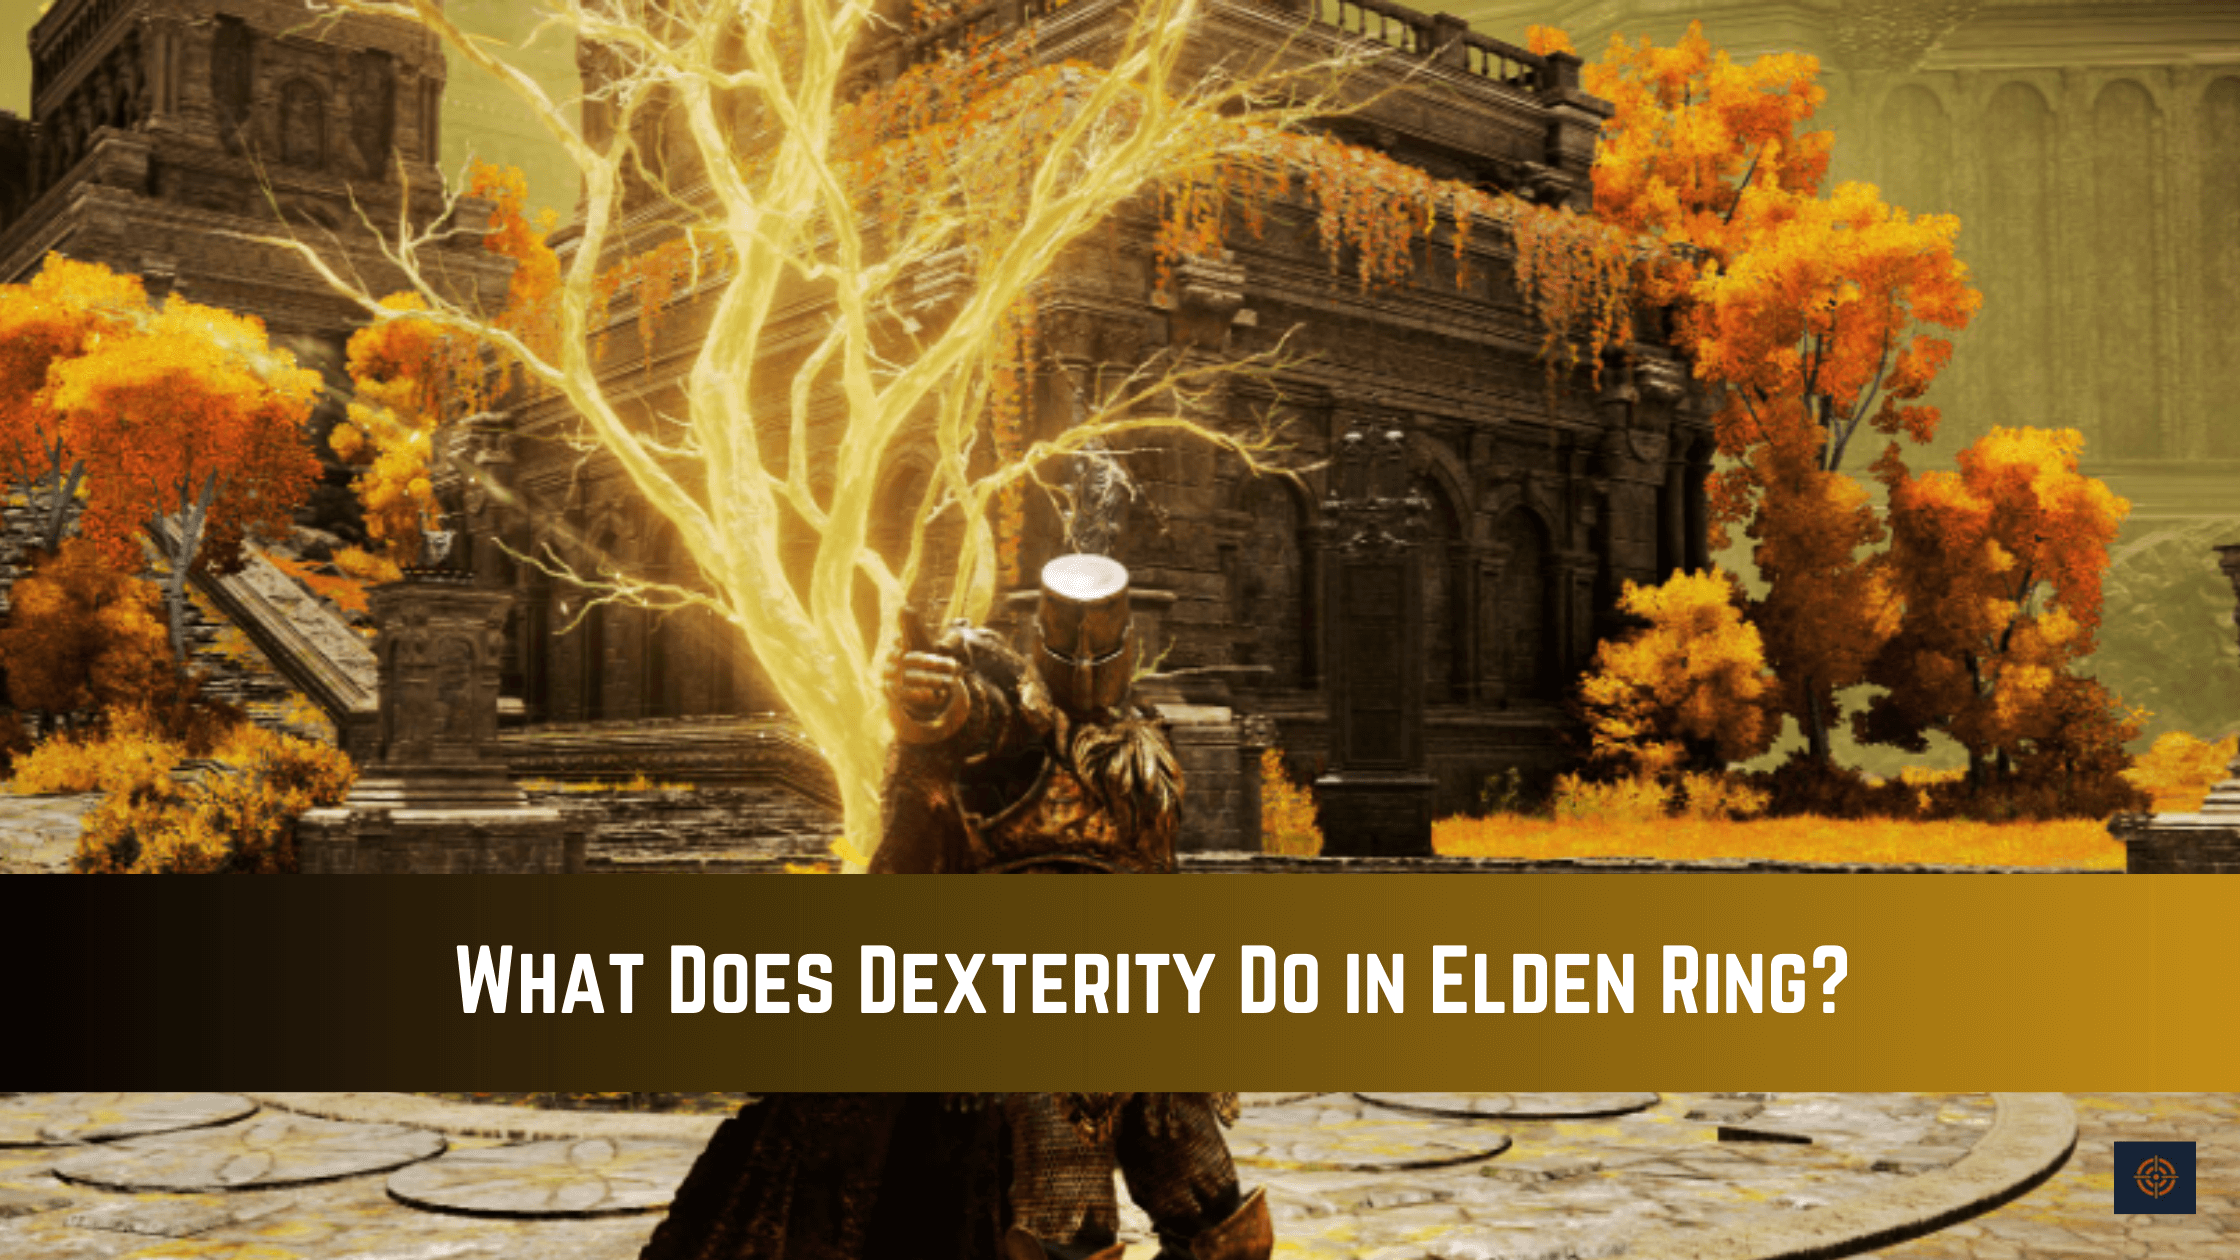 Dexterity in Elden Ring